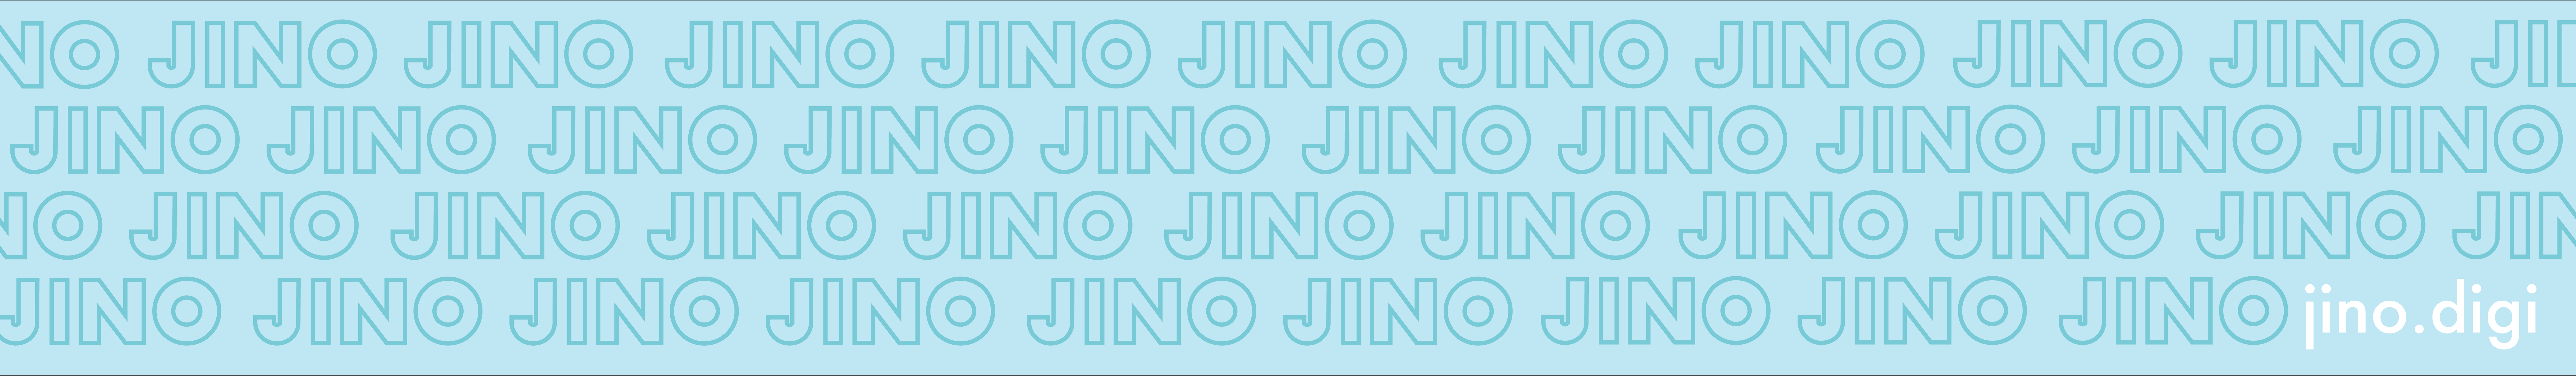 Jino Digi's profile banner